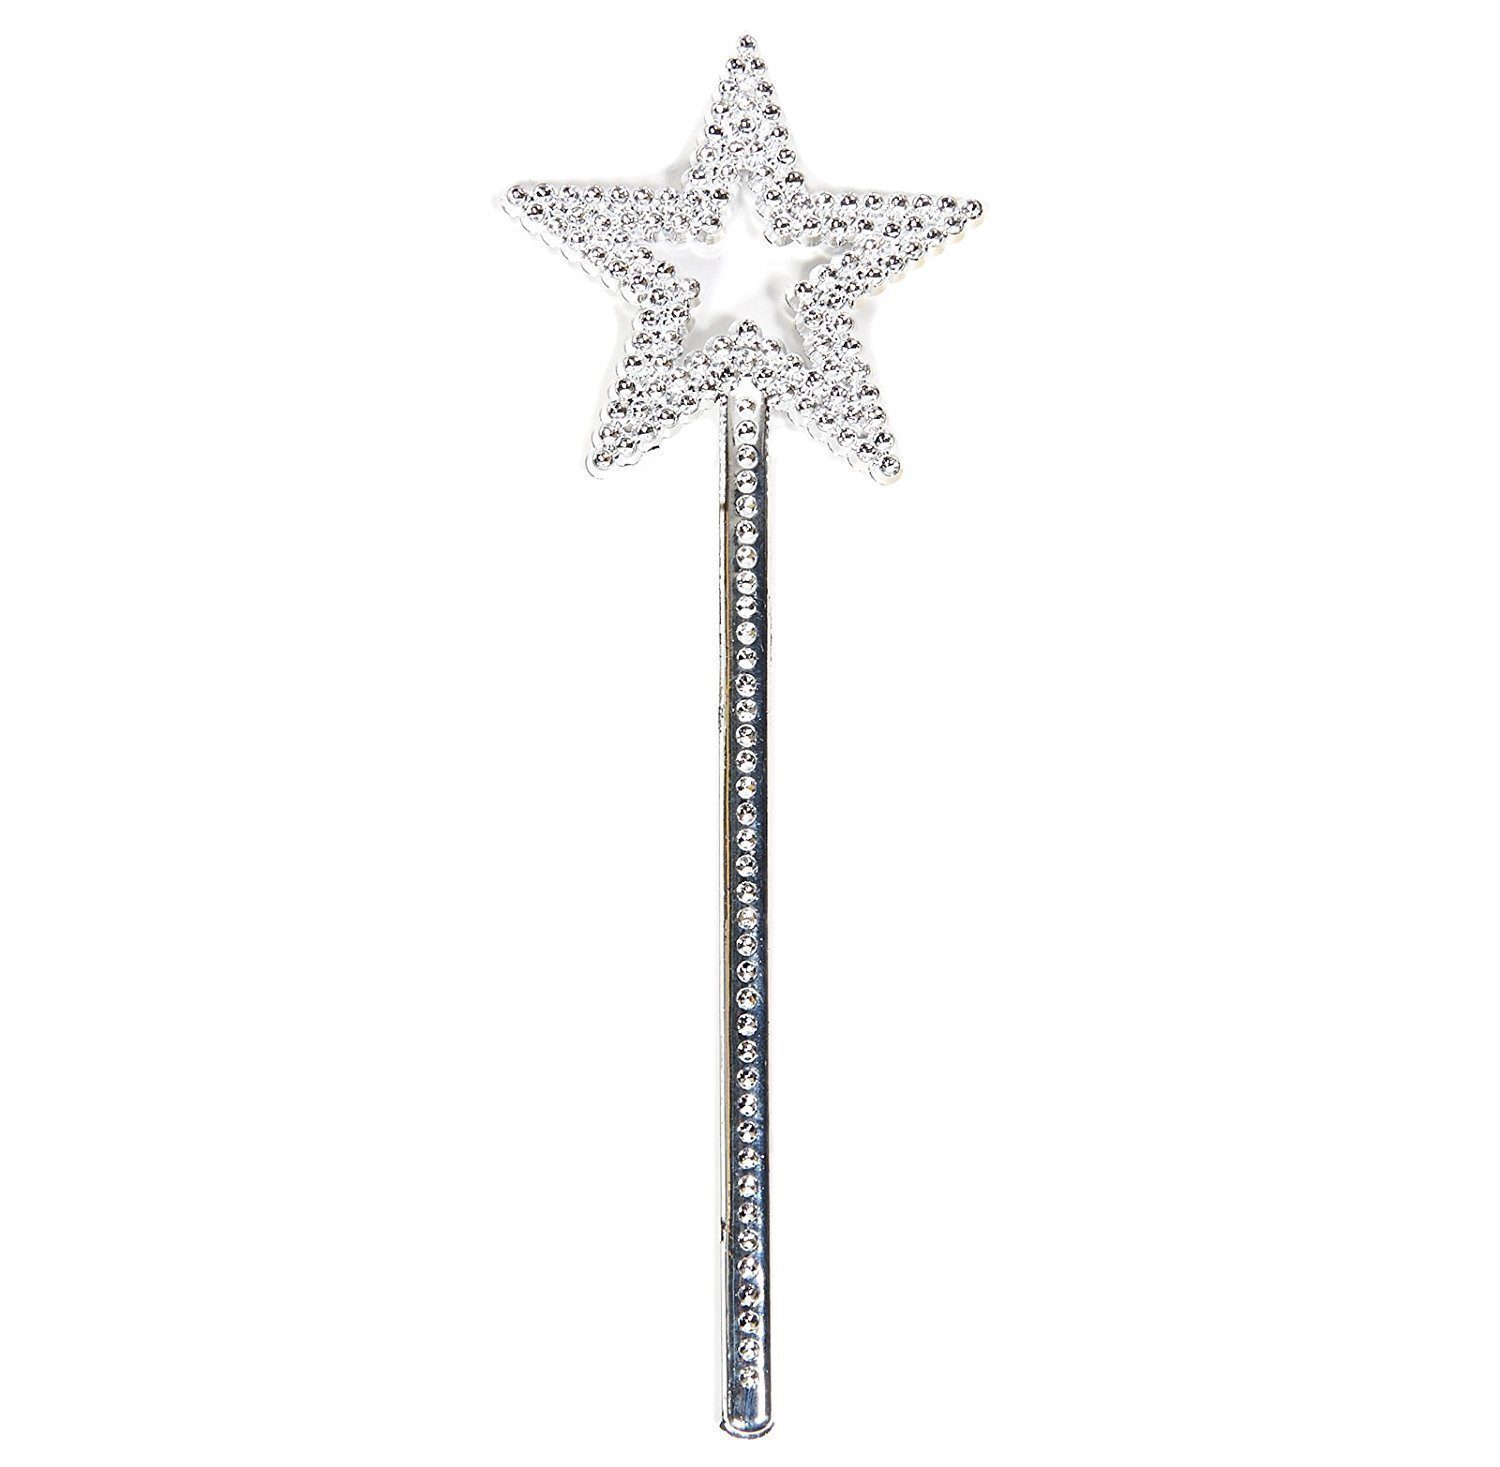 Yıldız Model Peri Asası Melek Asası Prenses Asası Metalize Gümüş Renk (Lisinya)